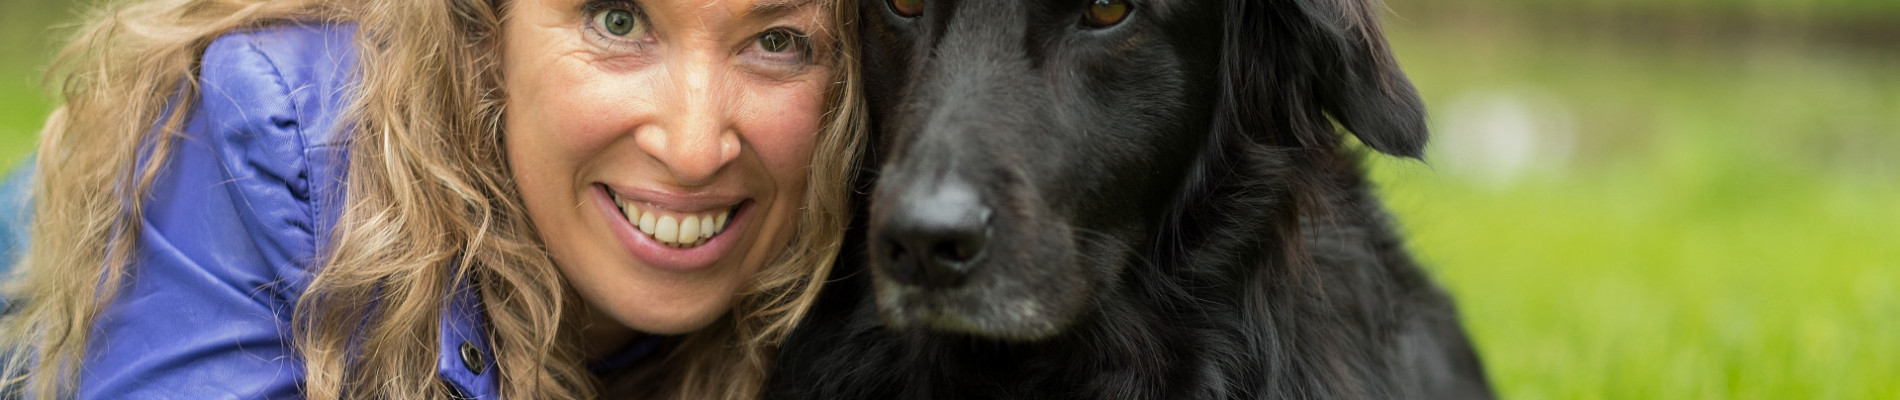 Petra en haar zwarte blindengeleidehond Wiggles liggen dicht naast elkaar in het gras en kijken de camera in.